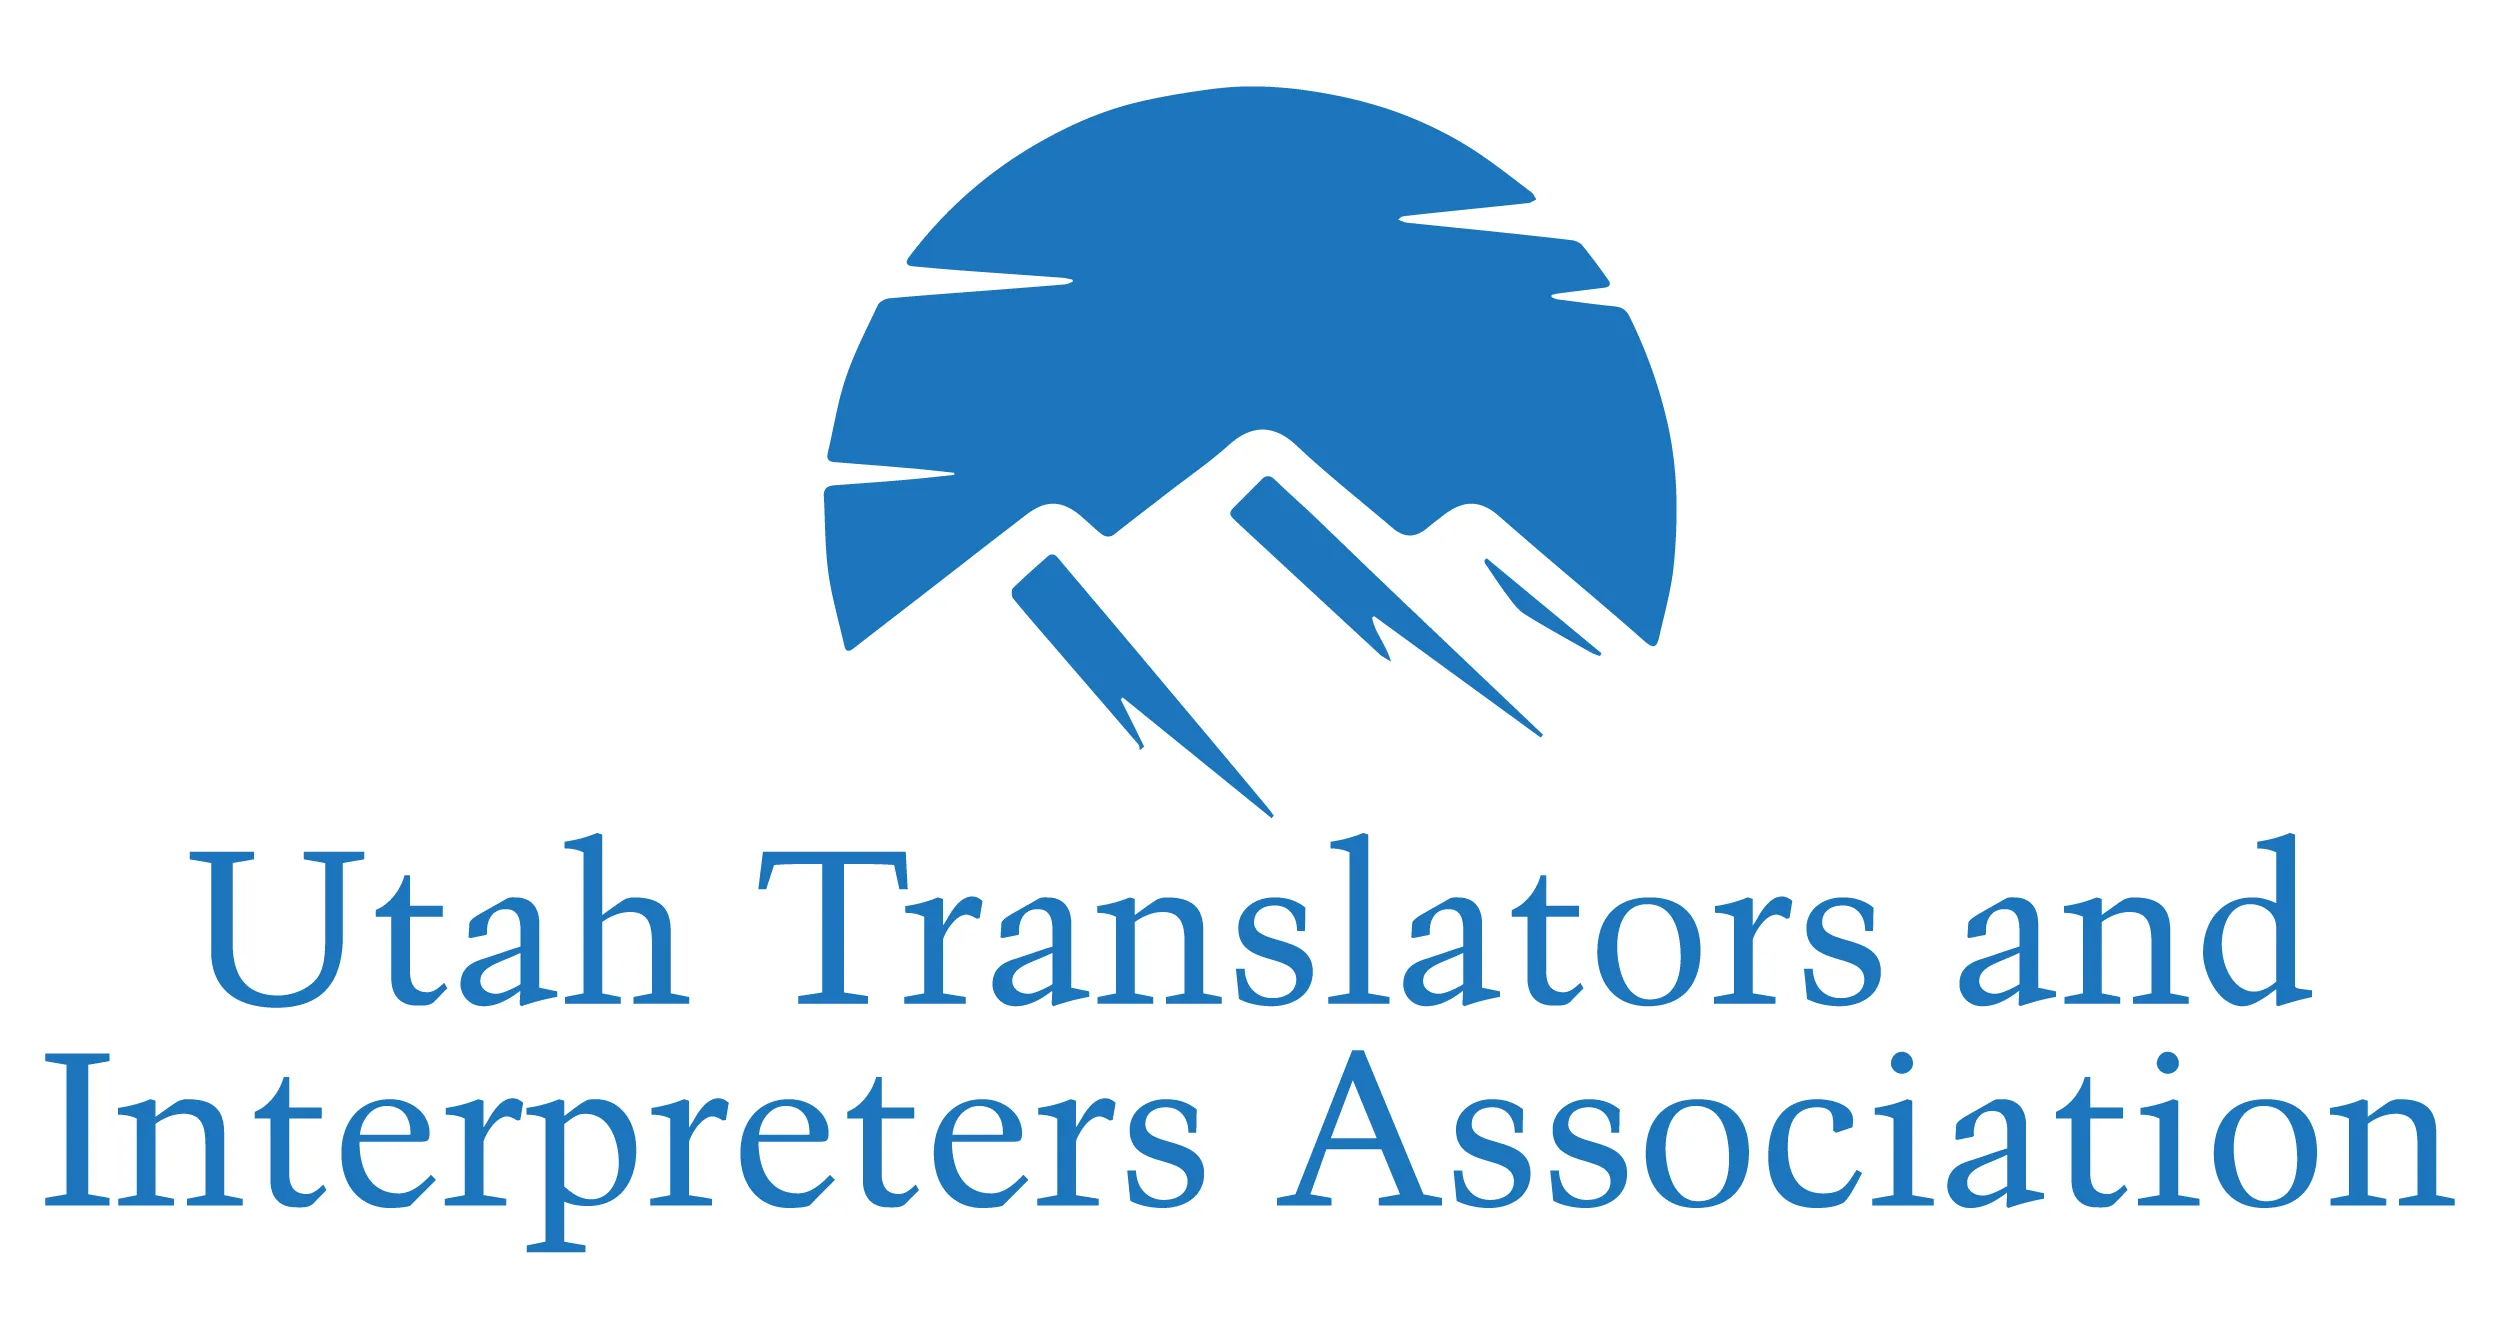 Utah Translators and Interpreters Association Logo